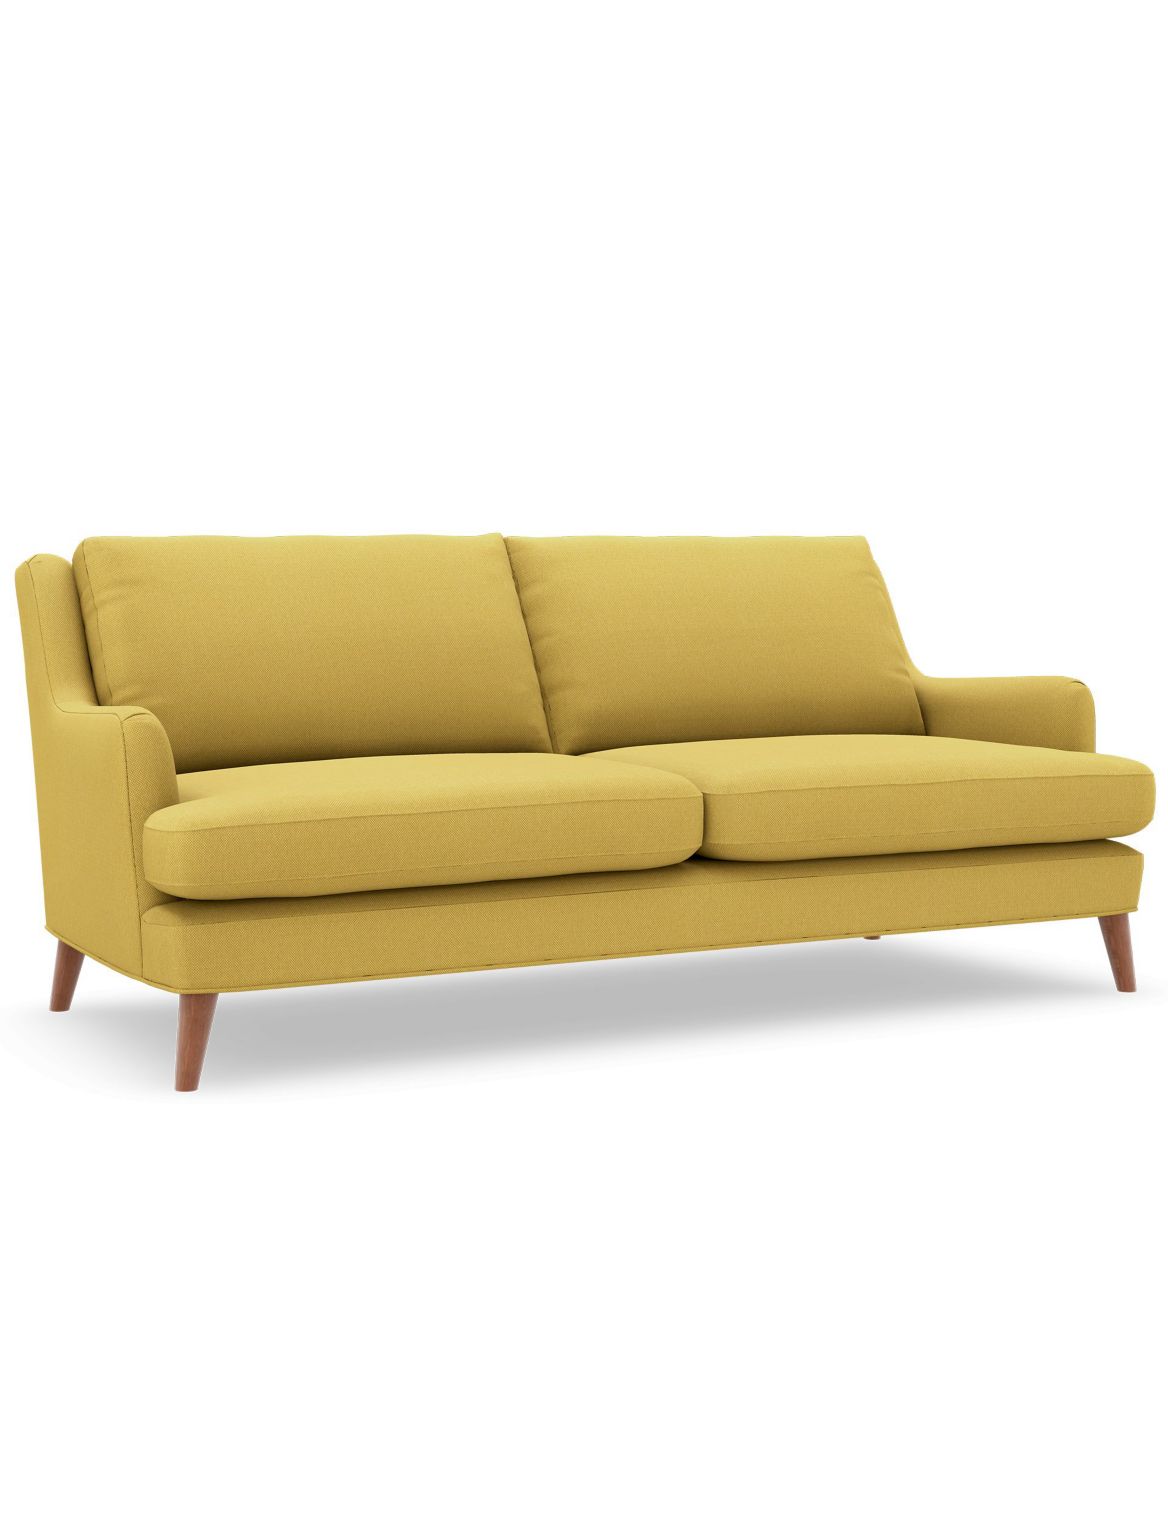 Ashton Large Sofa yellow